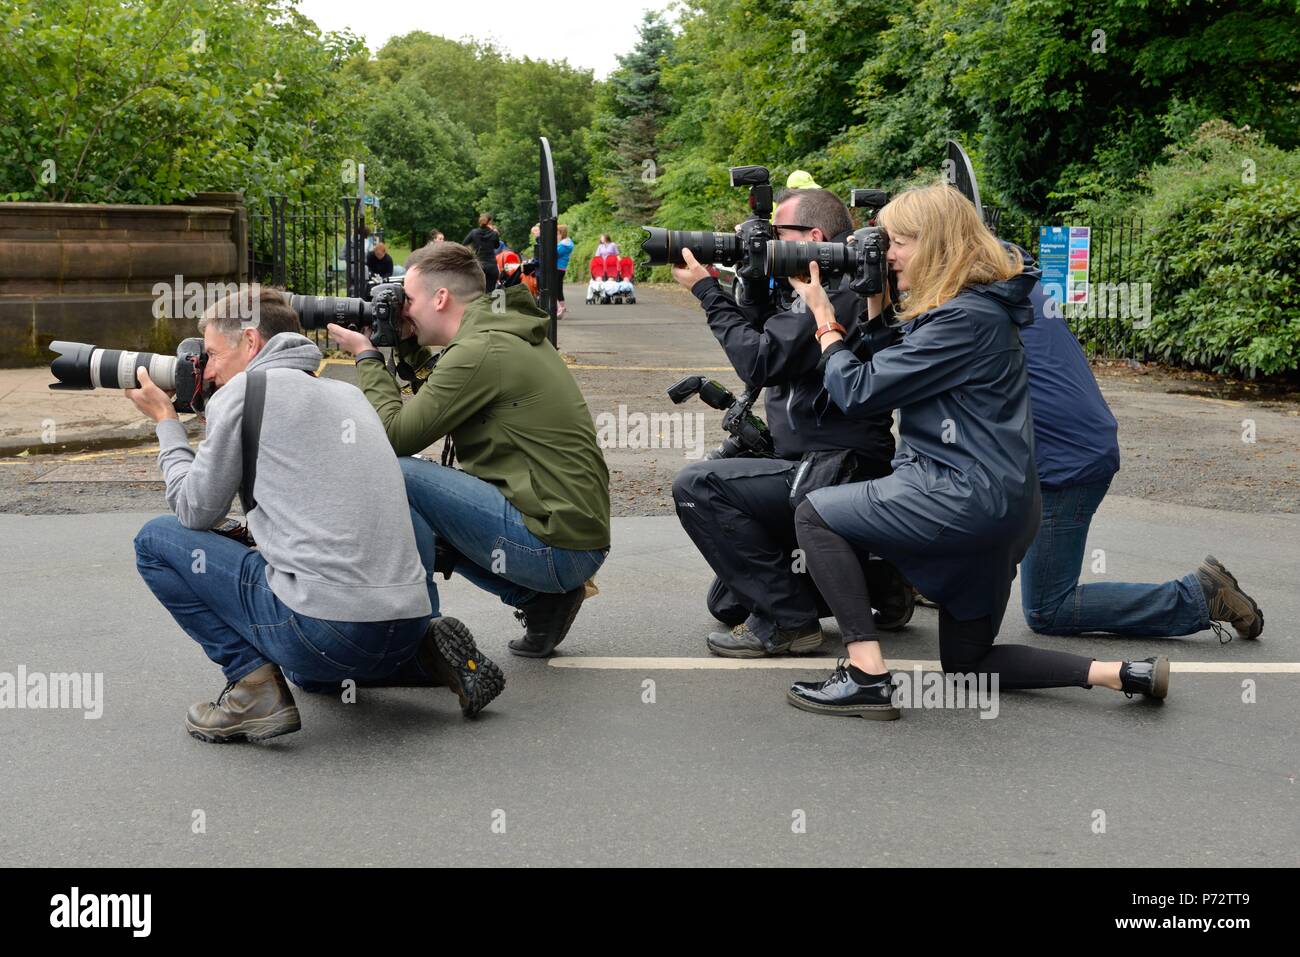 Ligne de photographes jusqu'à capturer des images de l'actualité et médias au Royaume-Uni Banque D'Images